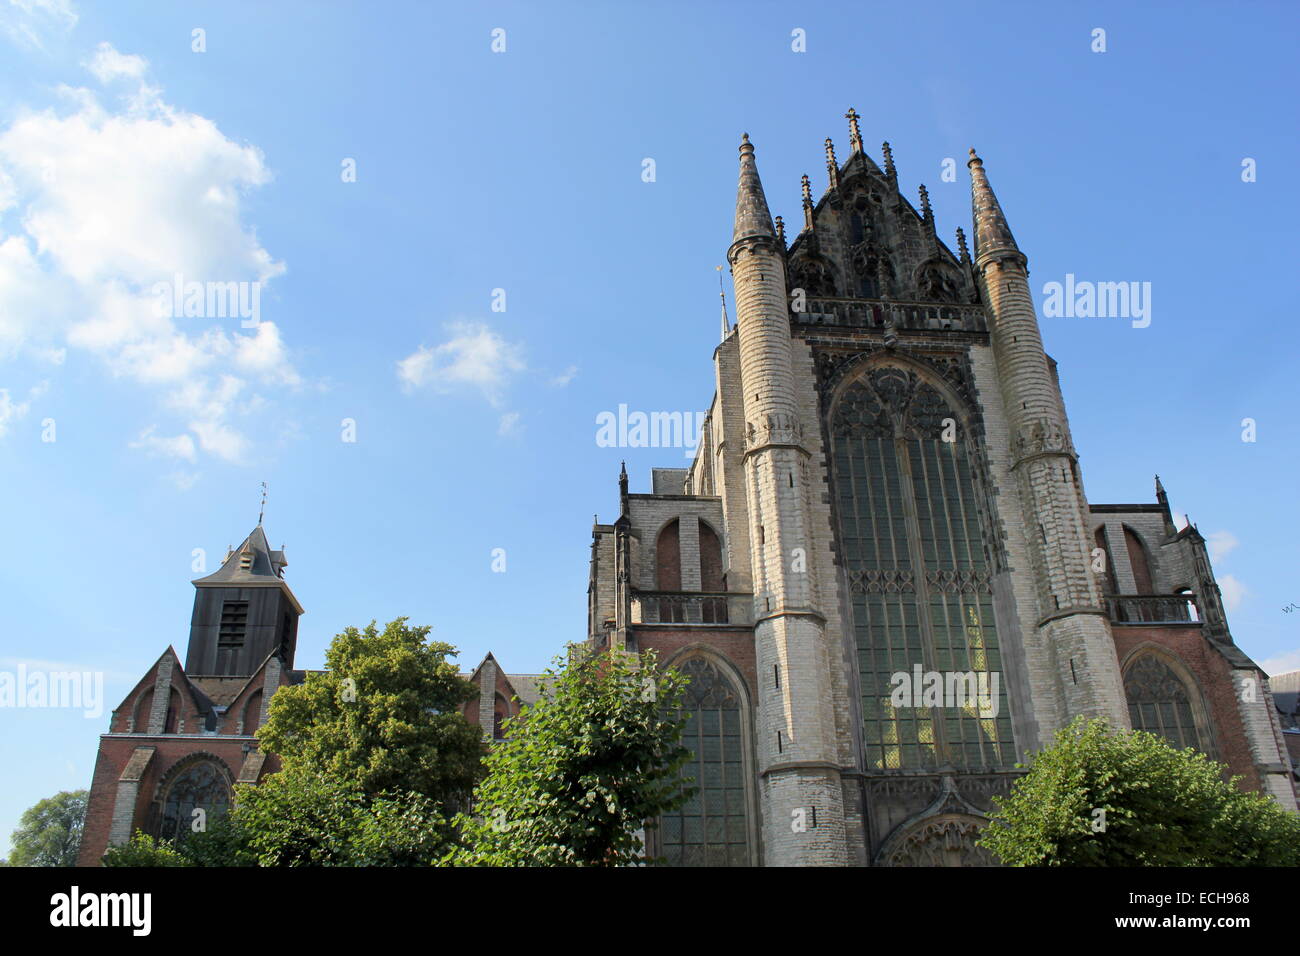 Hooglandse Kerk, eine wichtige gotische Kirche in Leiden, Niederlande, aus dem fünfzehnten Jahrhundert. -Leiden Sammlung Stockfoto